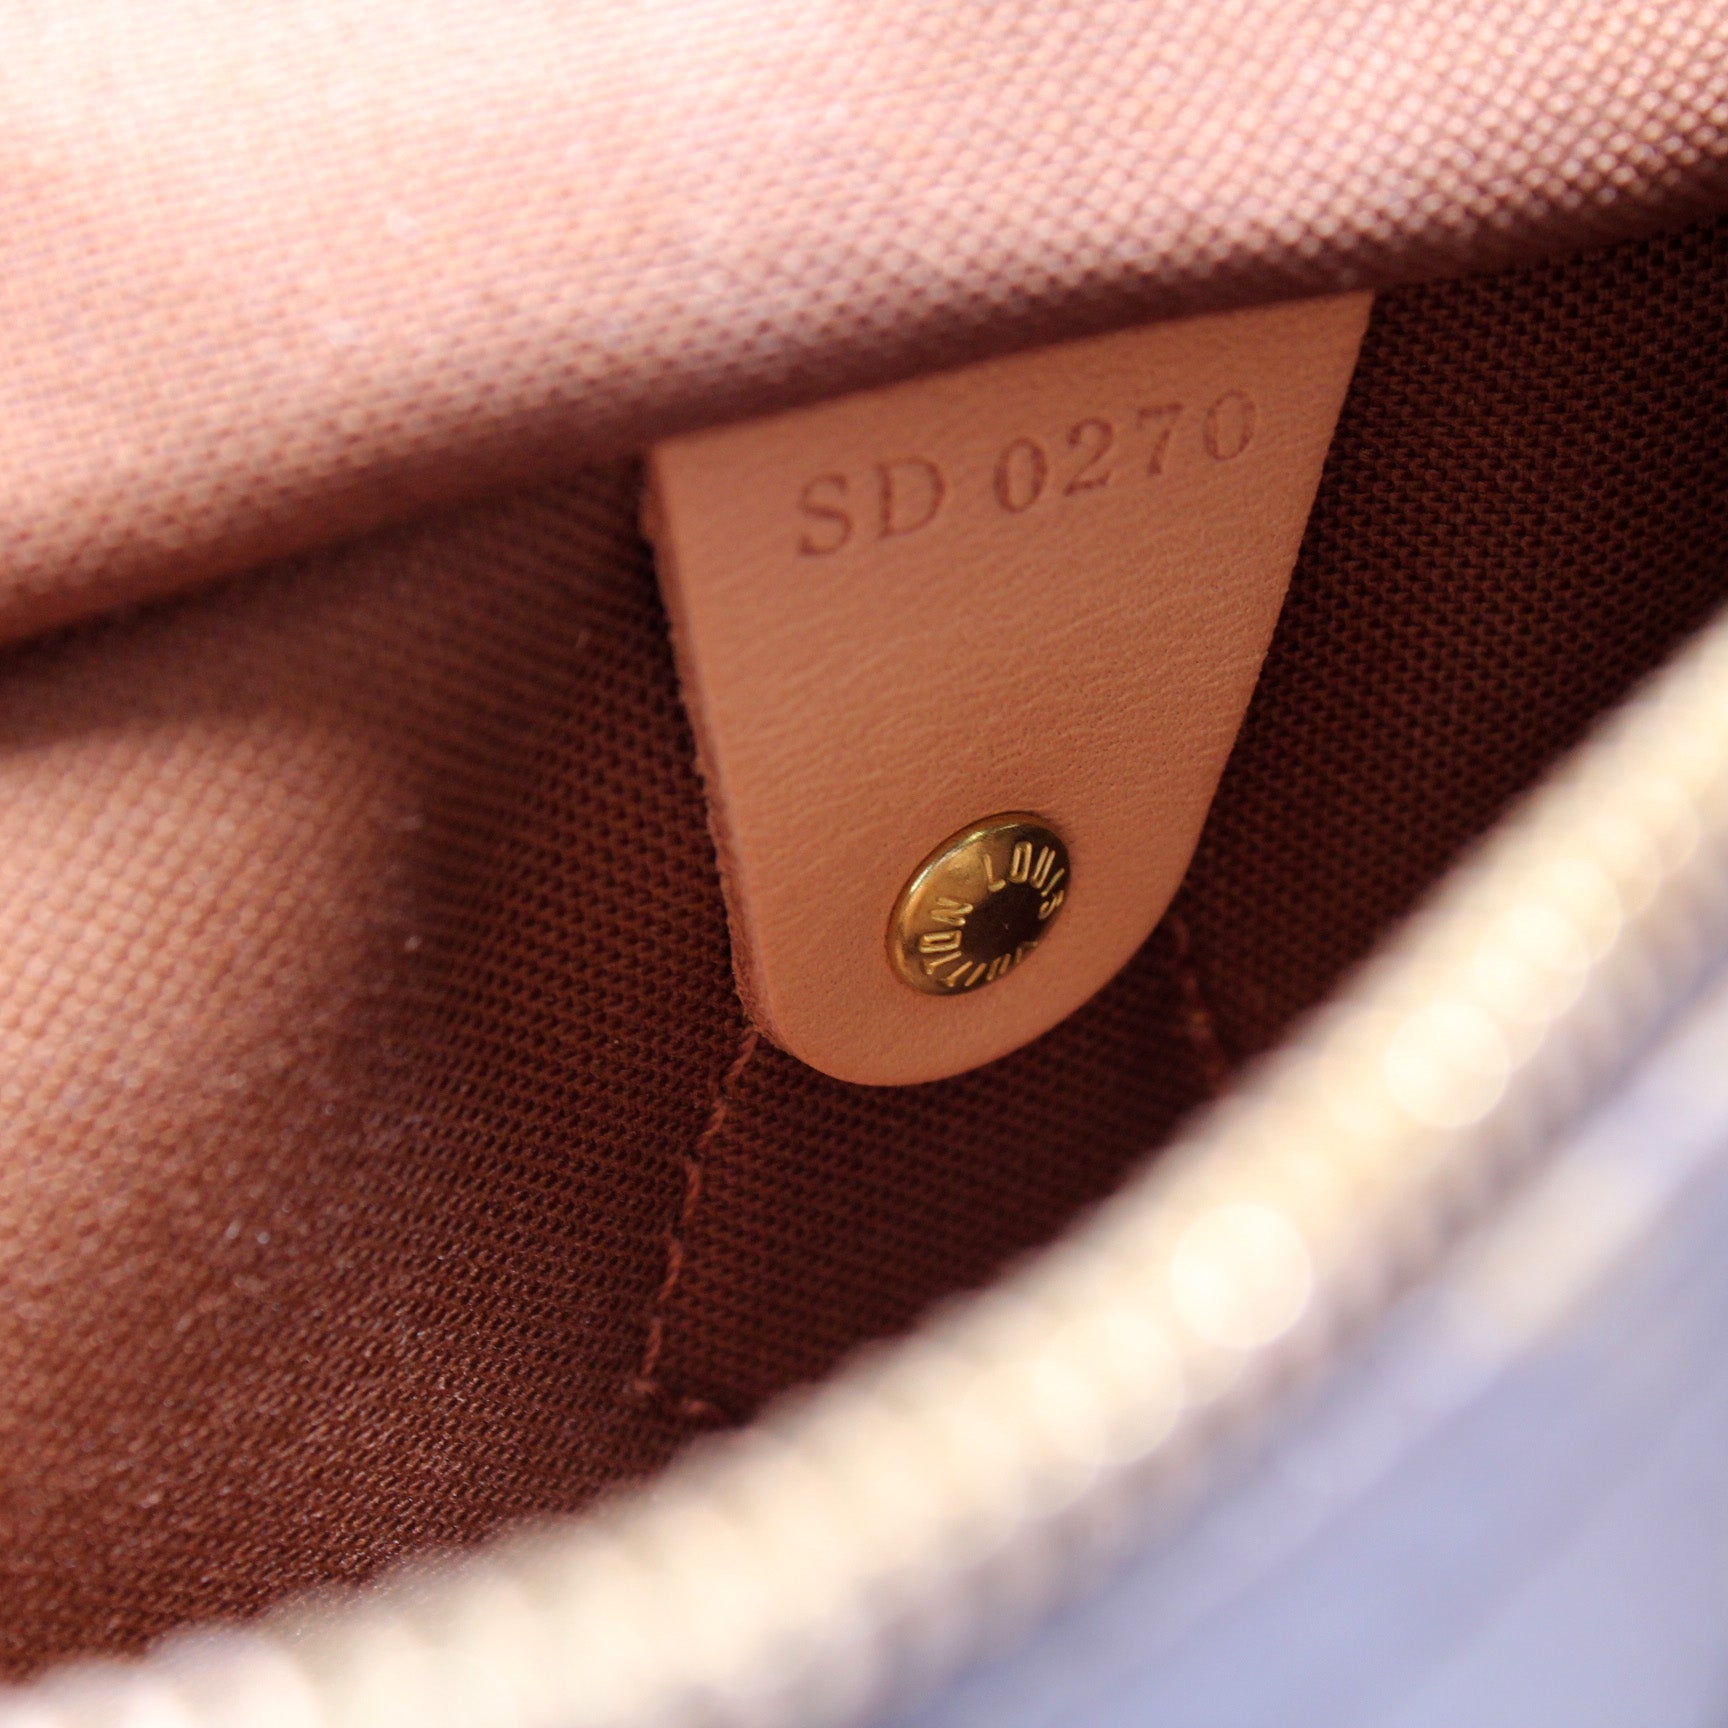 Speedy 25 Bandouliere Bicolor Empreinte – Keeks Designer Handbags